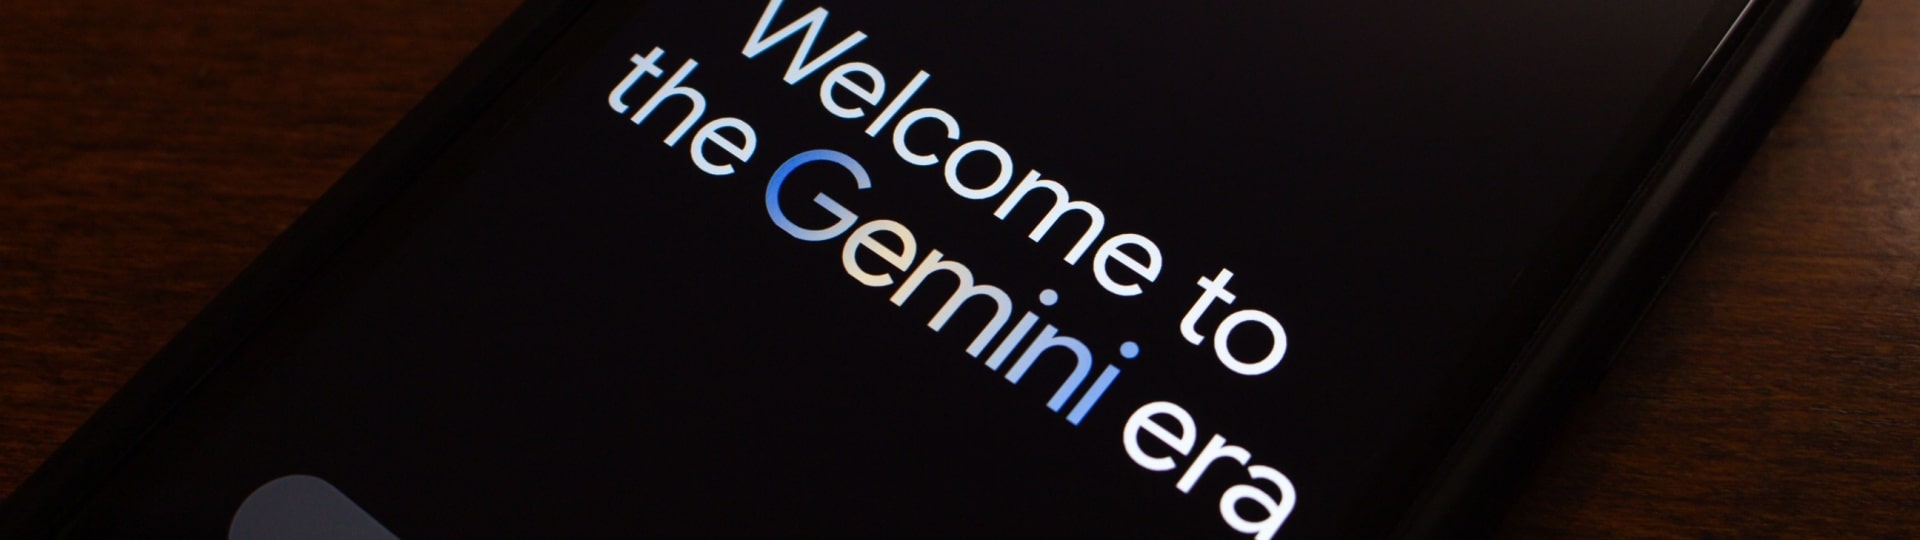 Apple vyjednává o zabudování umělé inteligence od Gemini do iPhonu